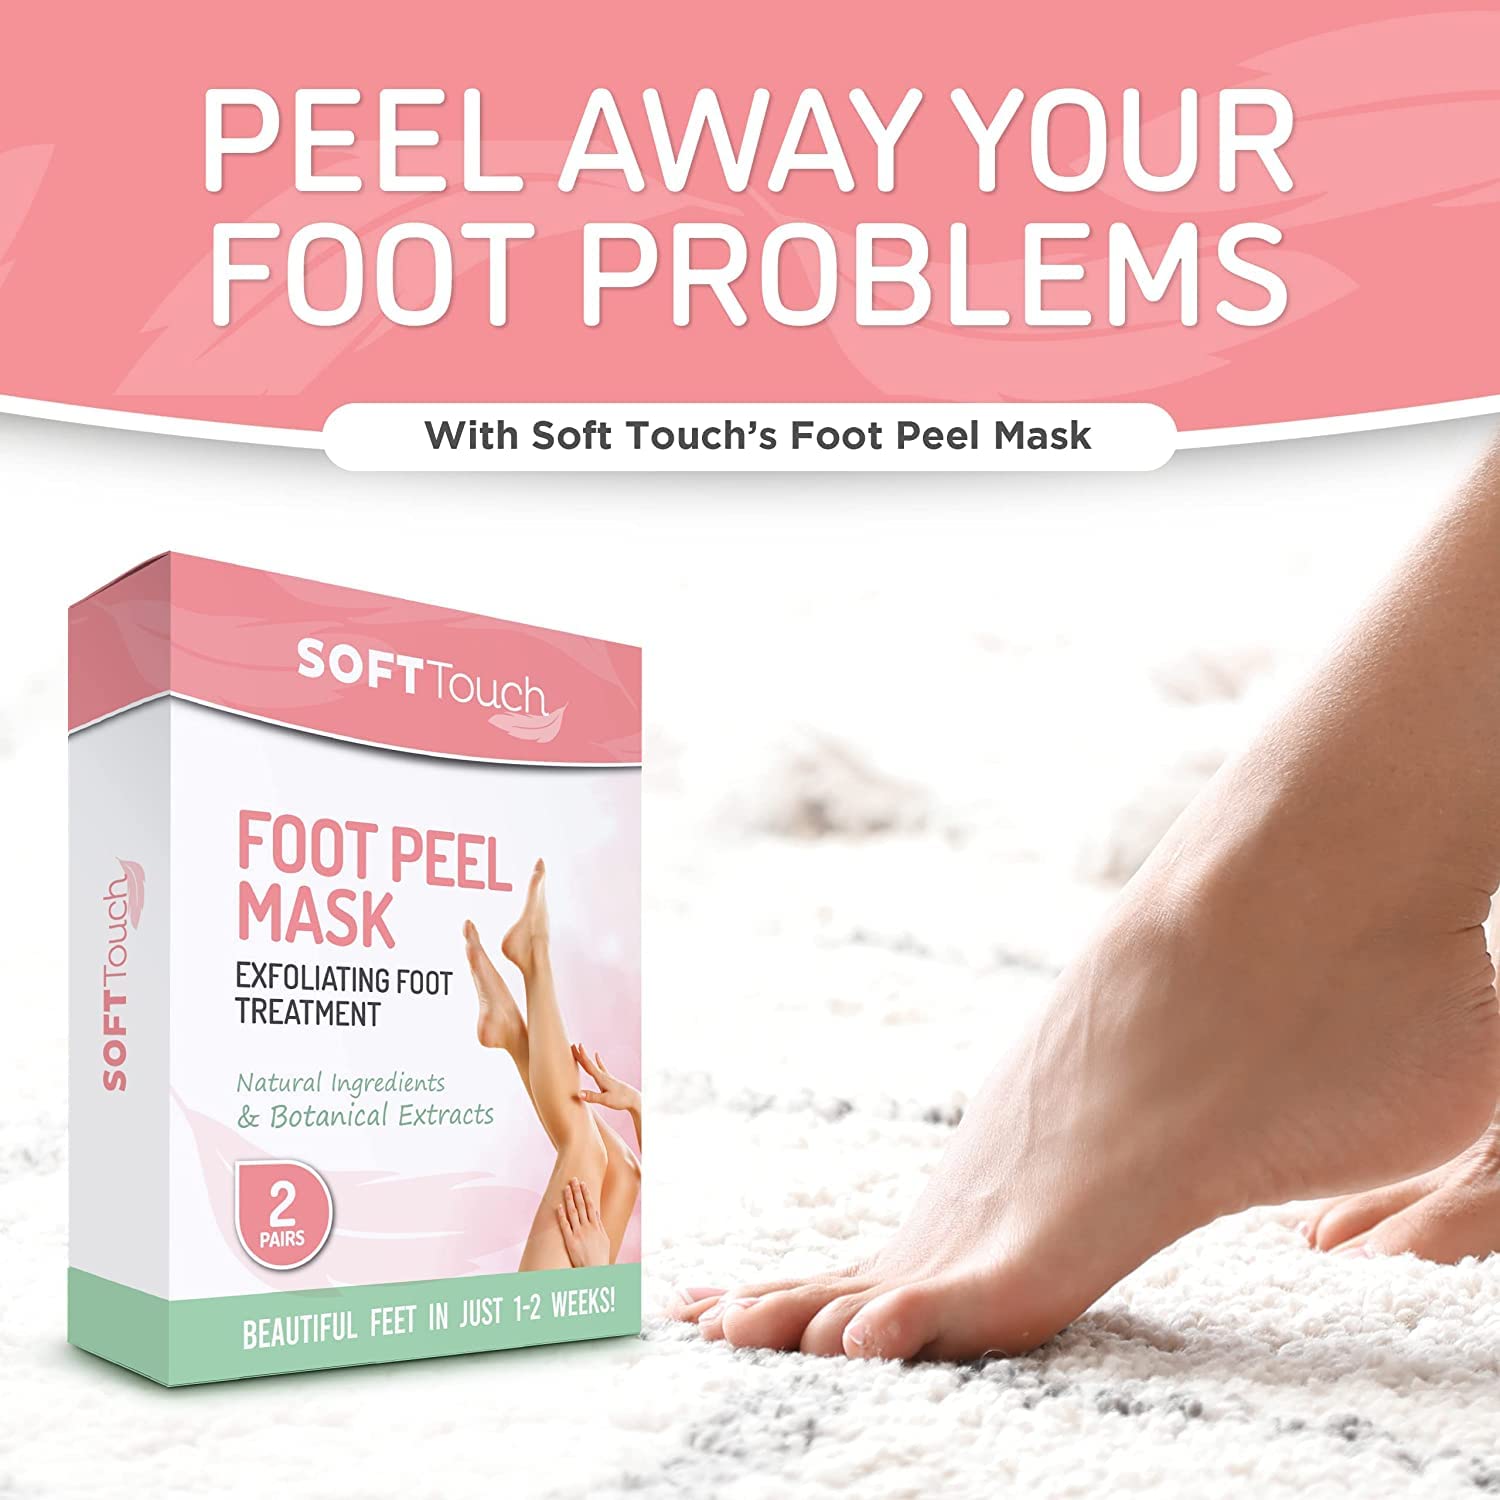 Foot Peel Mask Review